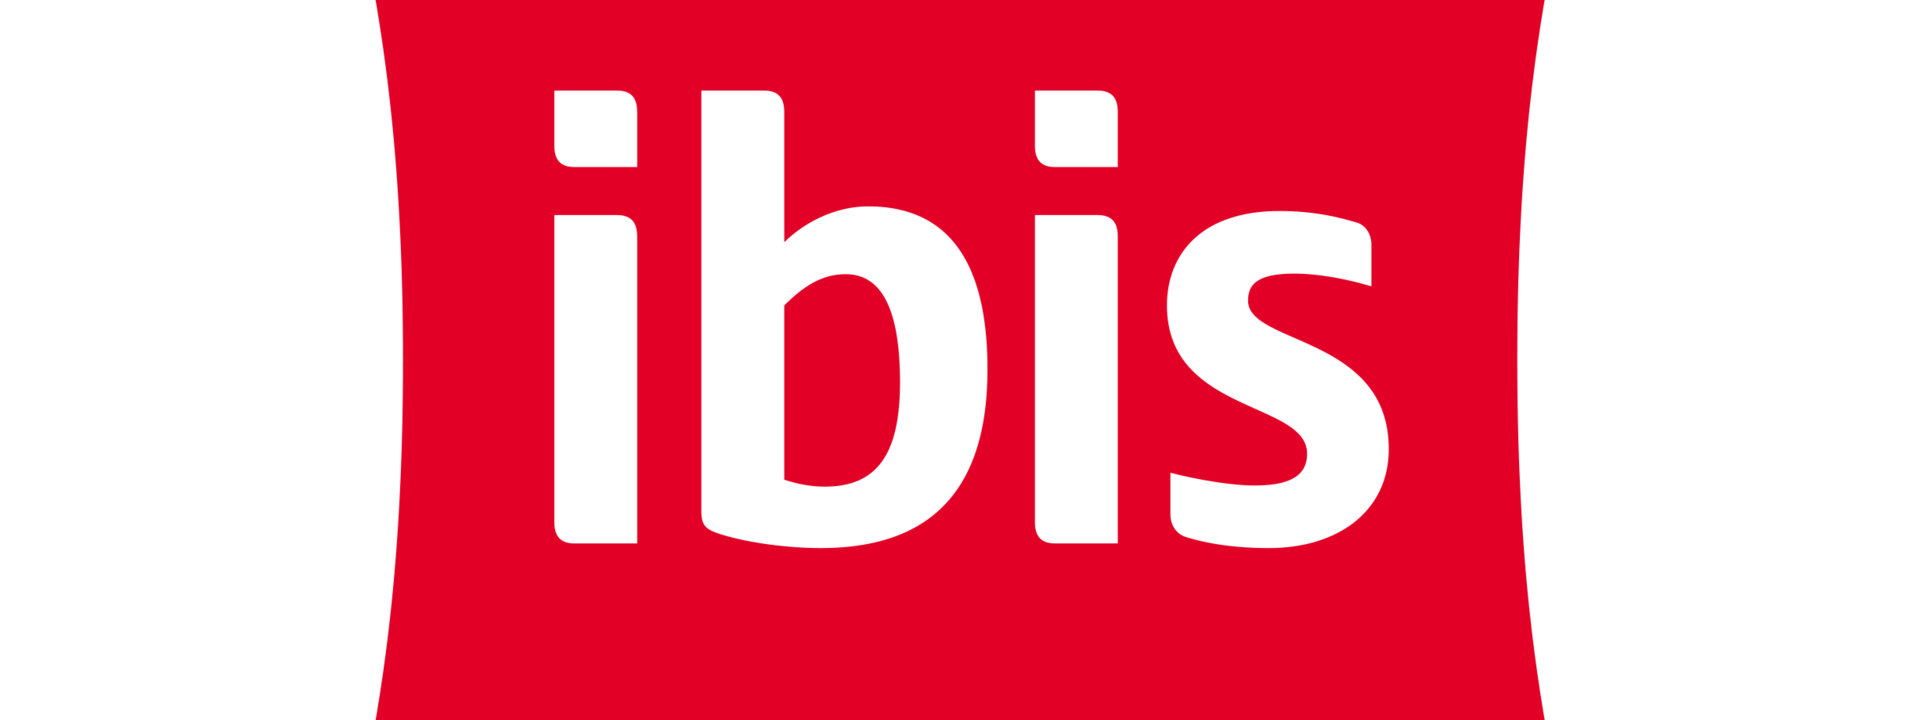 logo_ibis_rgb_0.png